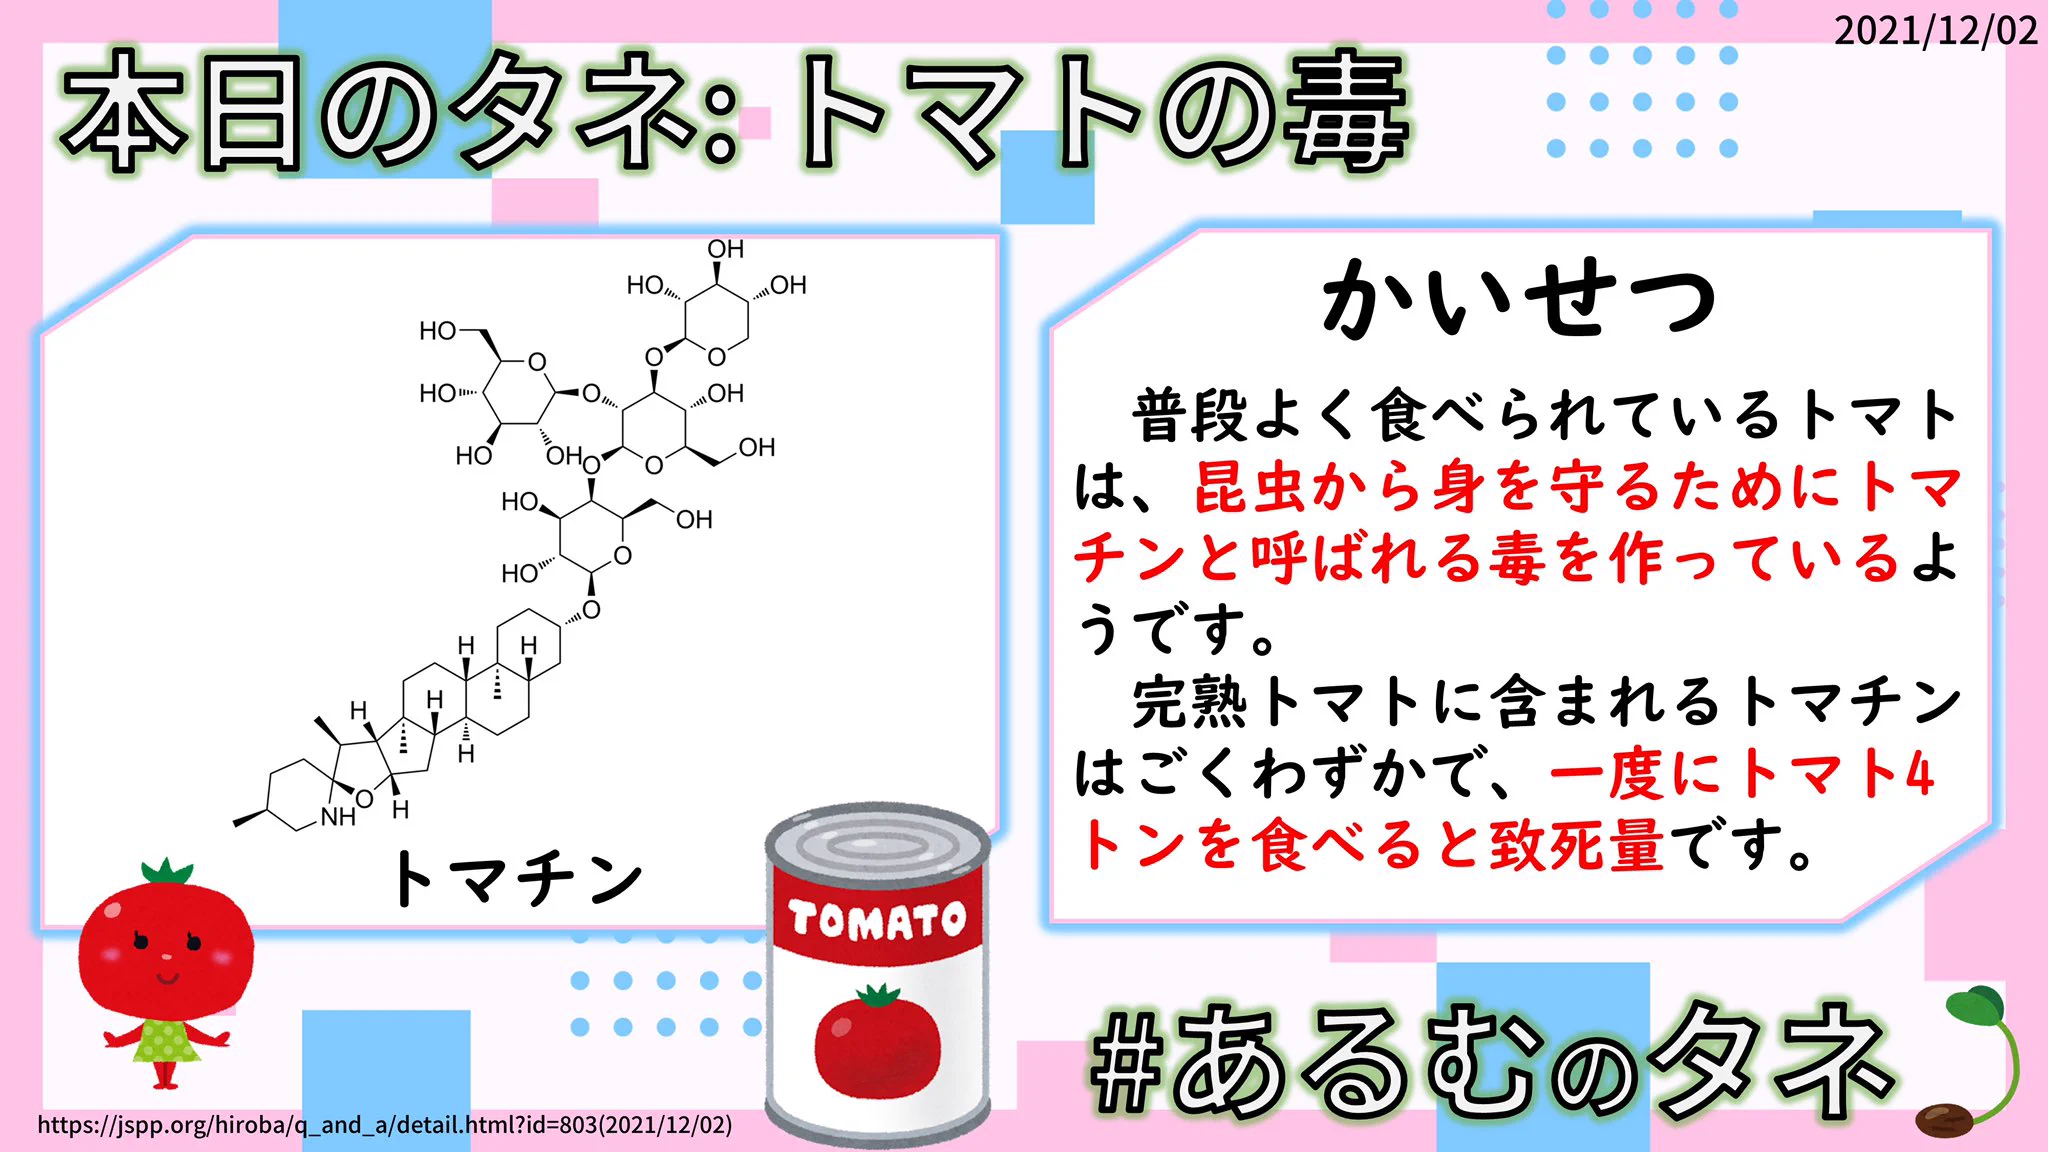 @youko_rou トマチンはこんな分子構造をしております(=ФωФ=)
あのじゃがいもの毒、ソラニンと似てる物質なんですよ〜✨ 